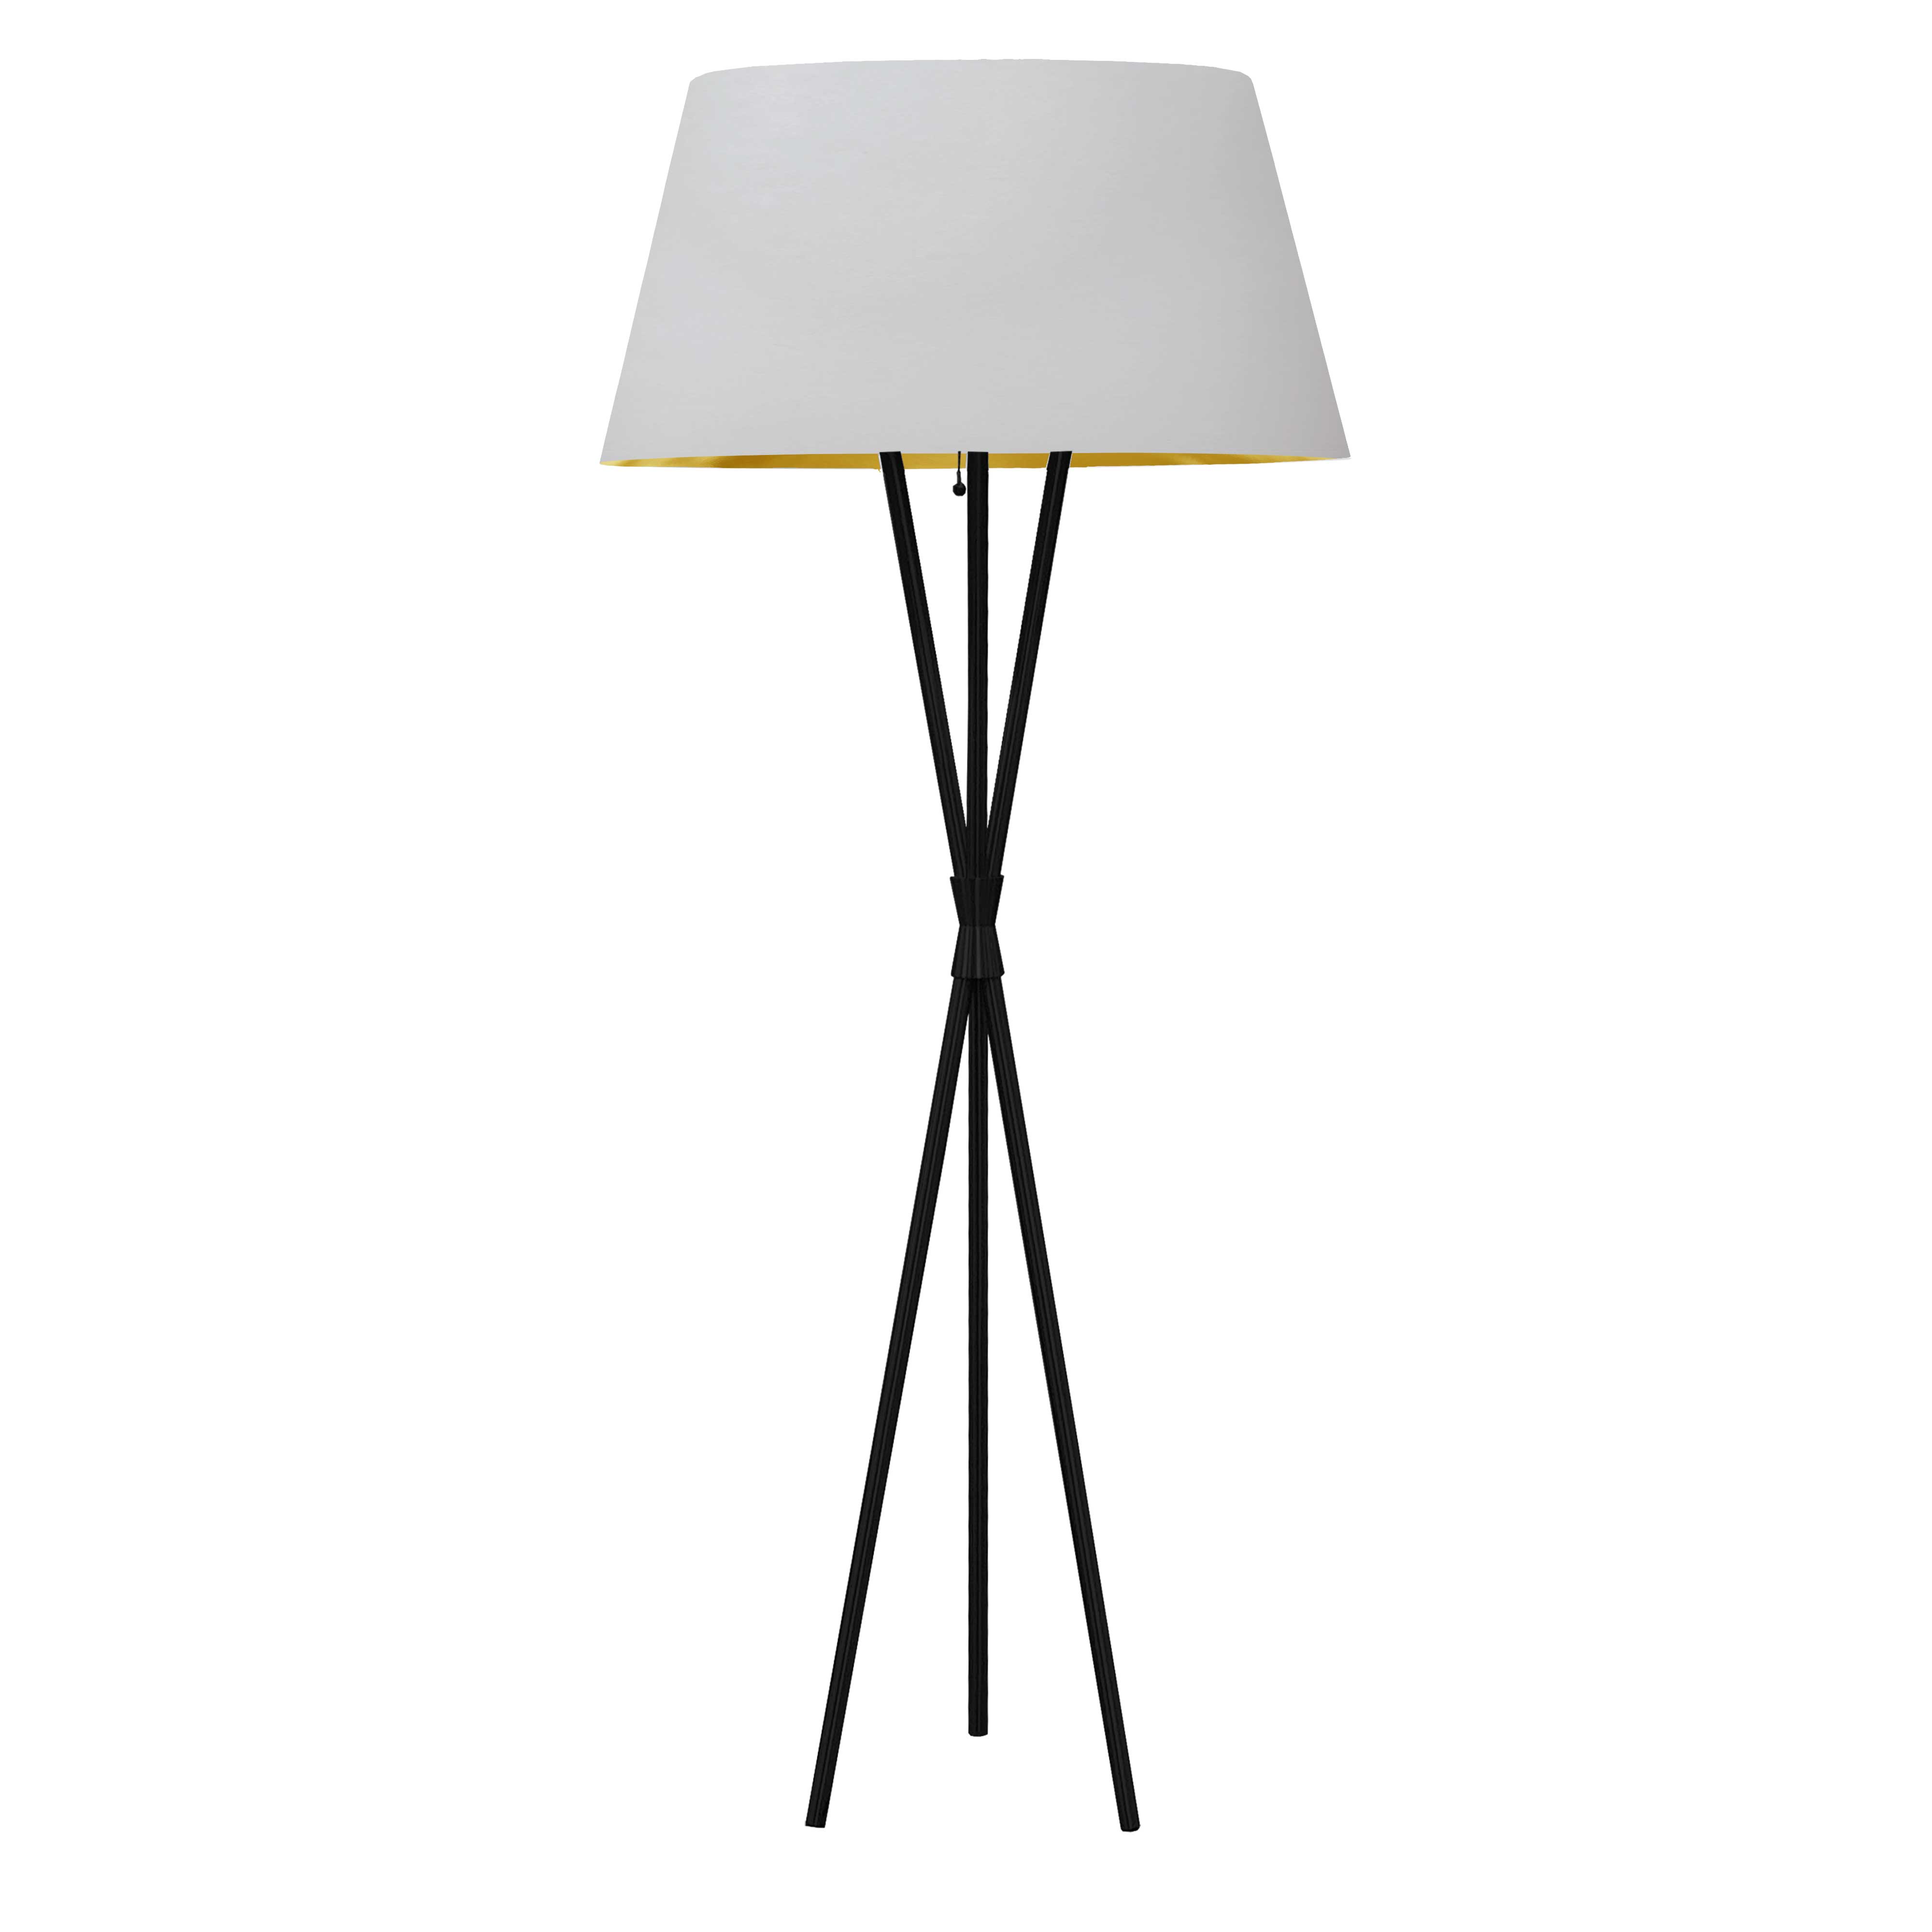 1 Light 3 Legged Matte Black Floor Lamp, with White/Gold Shade